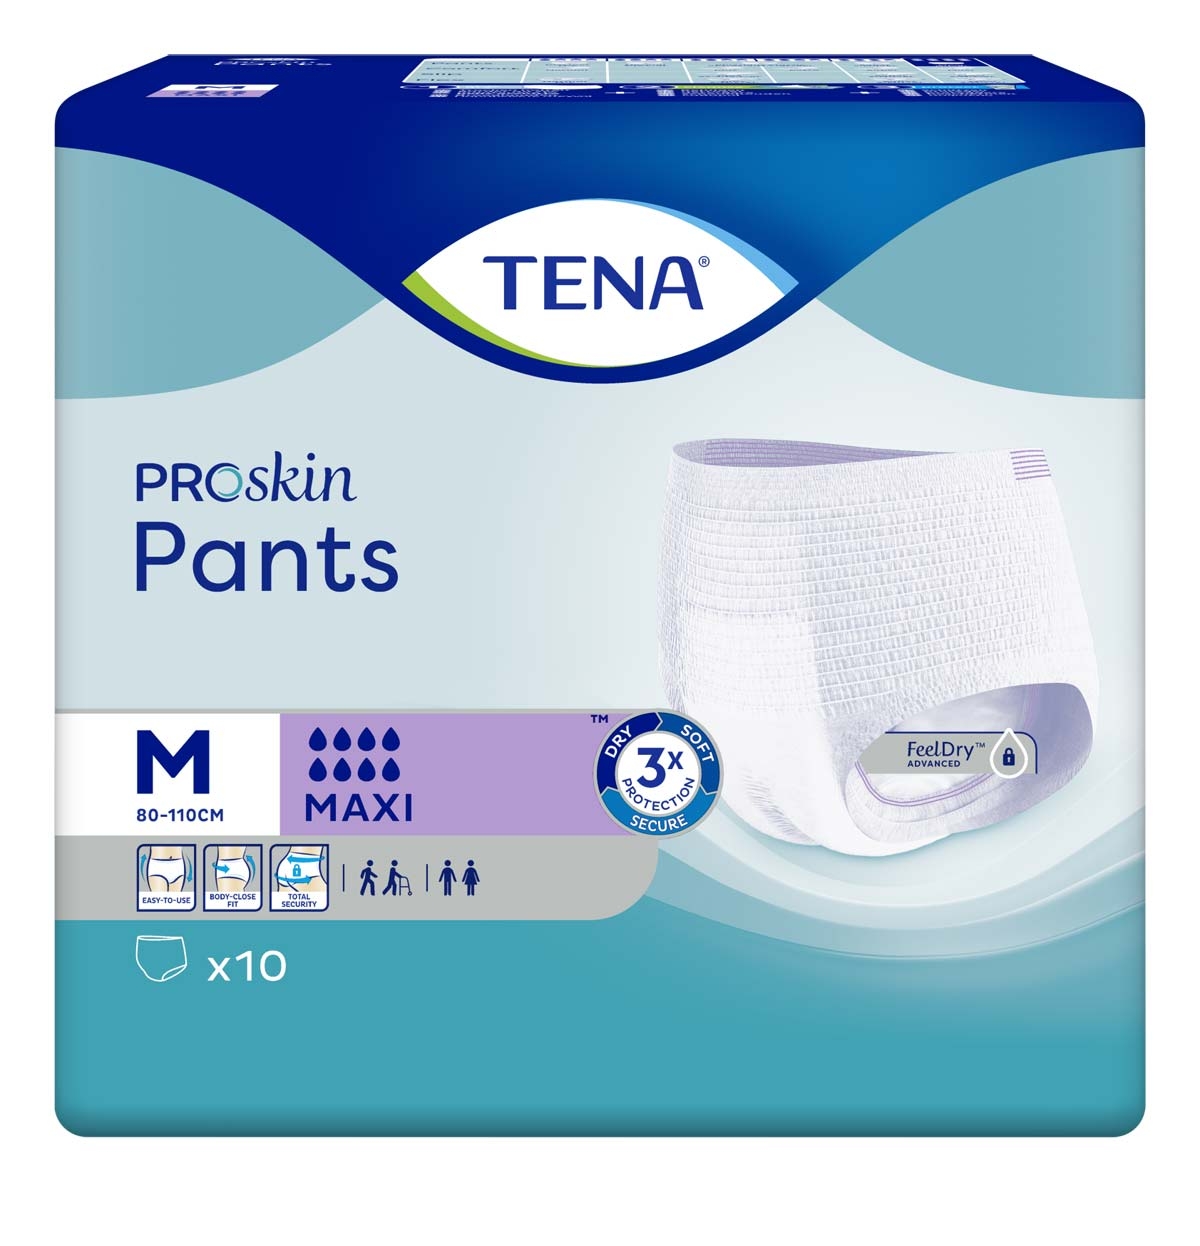 TENA Pants MAXI - extra saugstark - Medium (M) - 10 Stück Packung